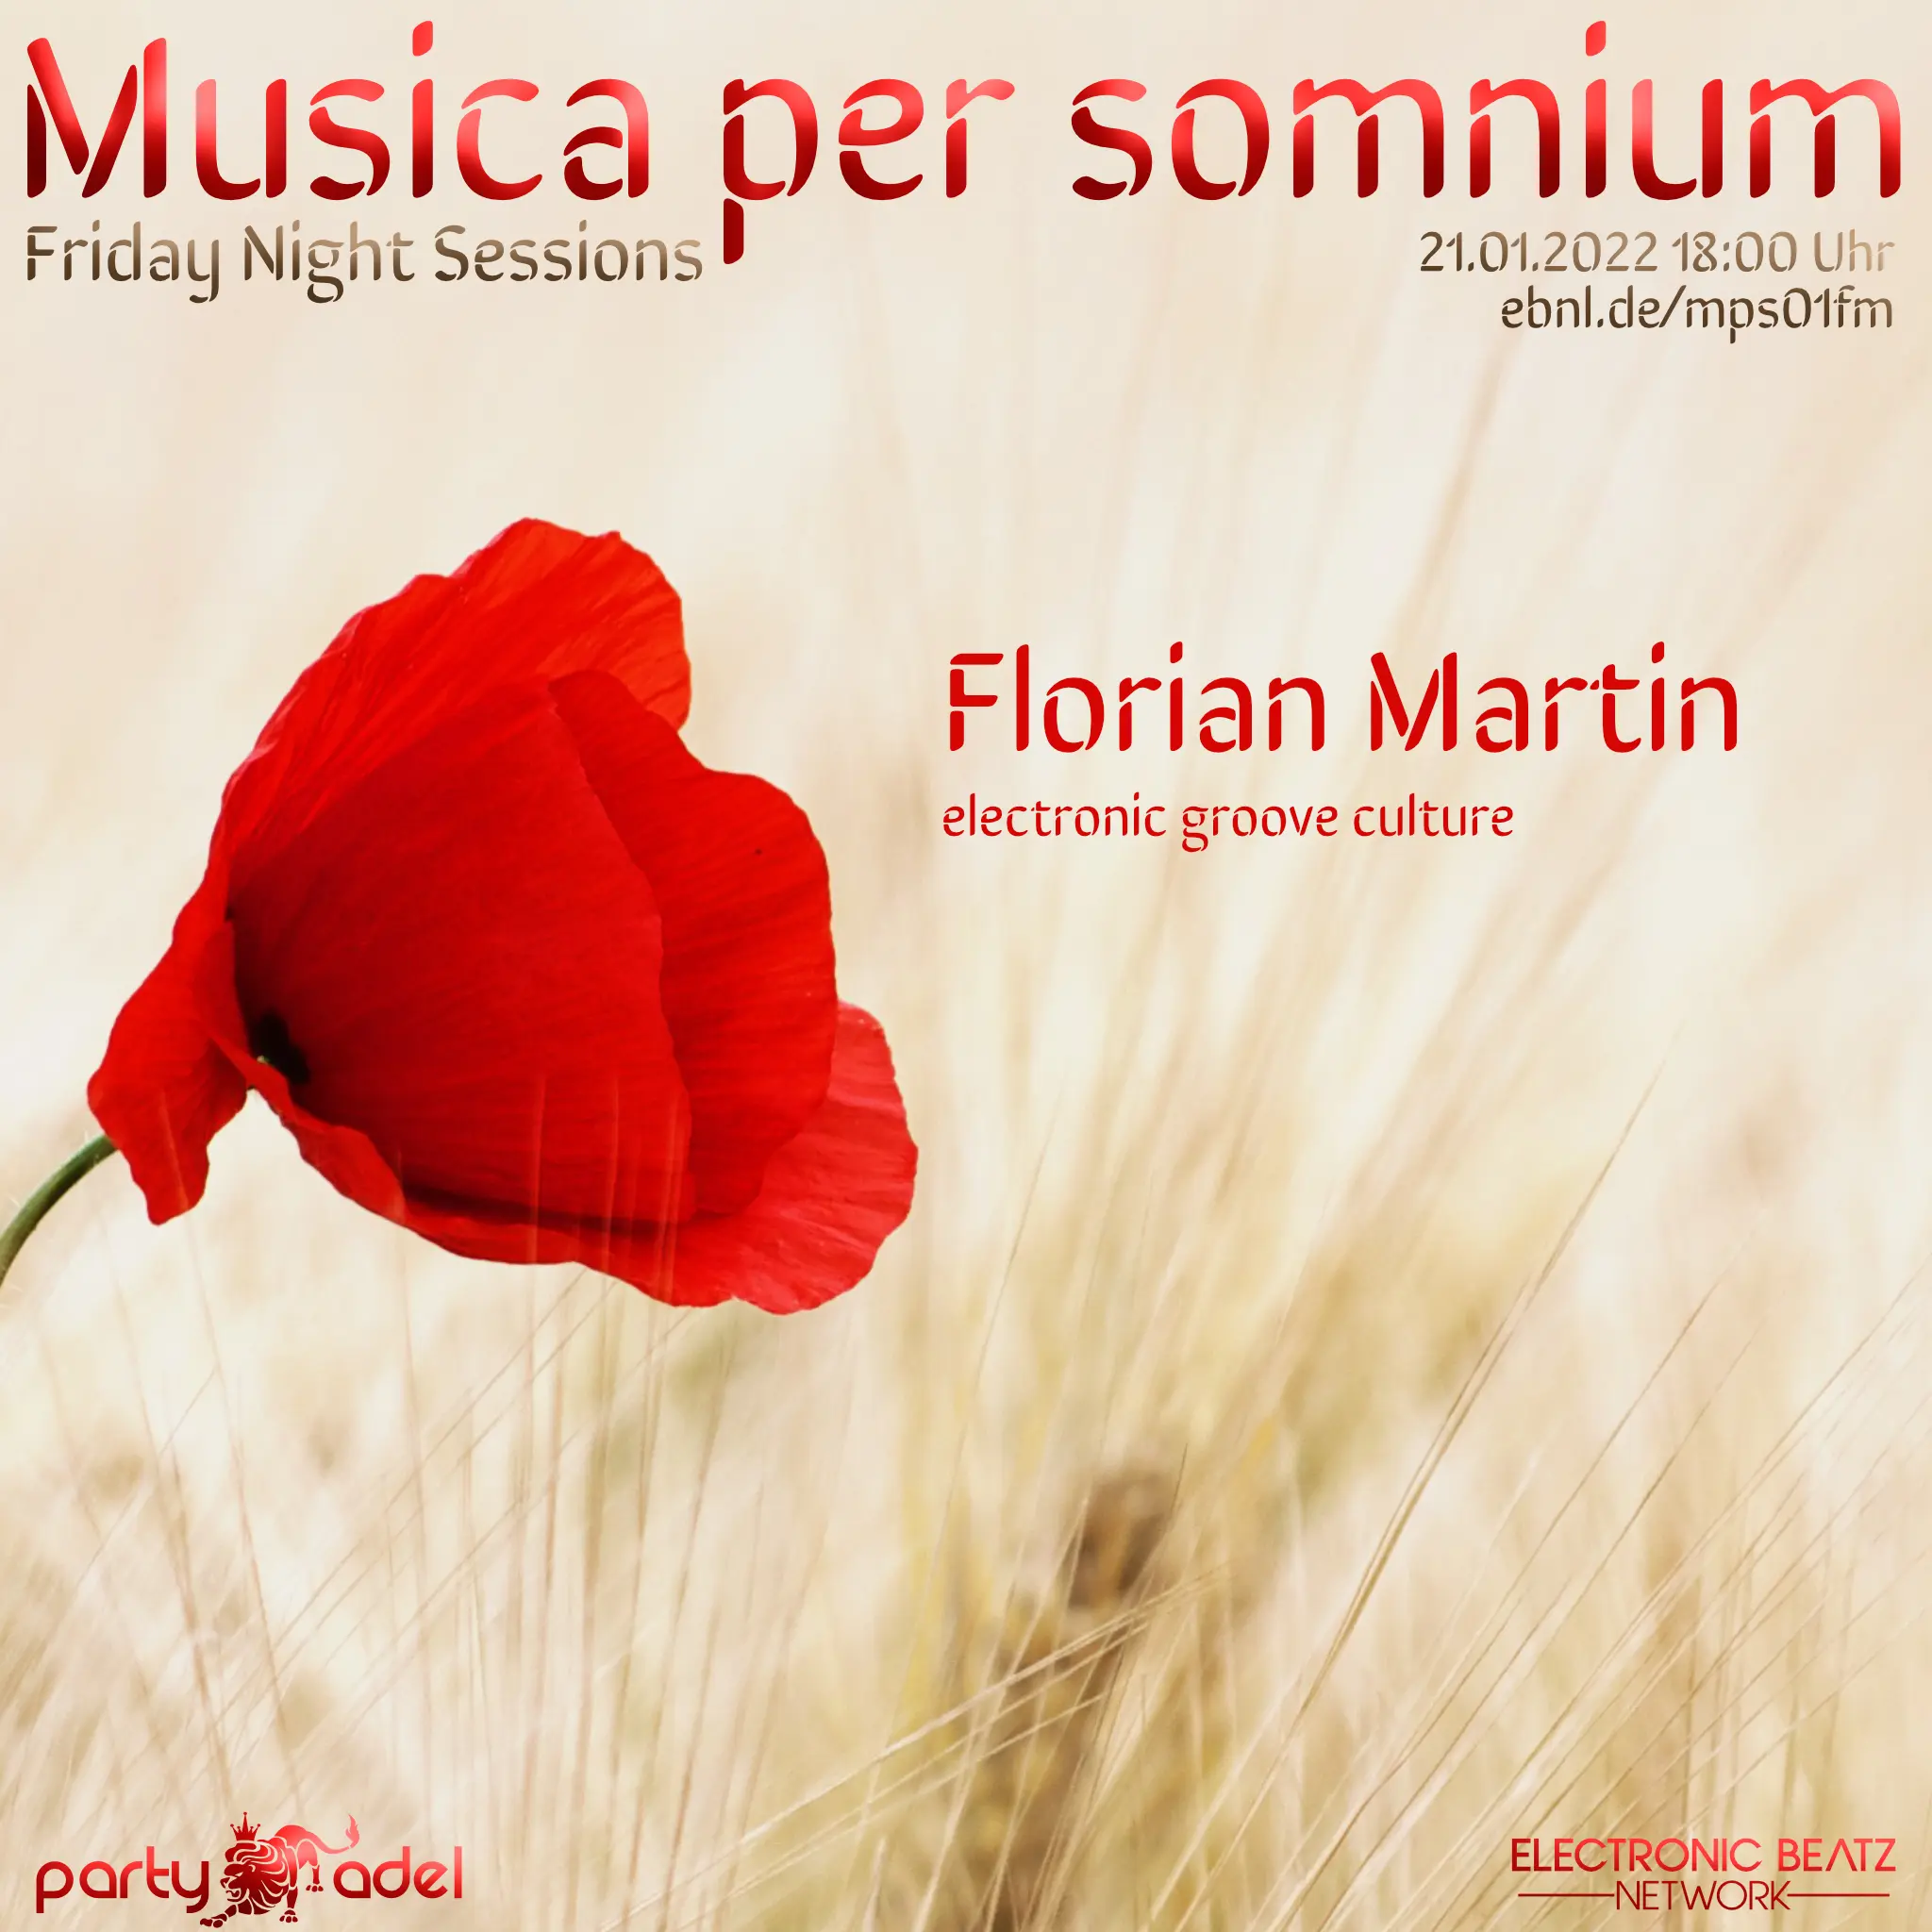 Florian Martin @ Musica per somnium (21.01.2022)